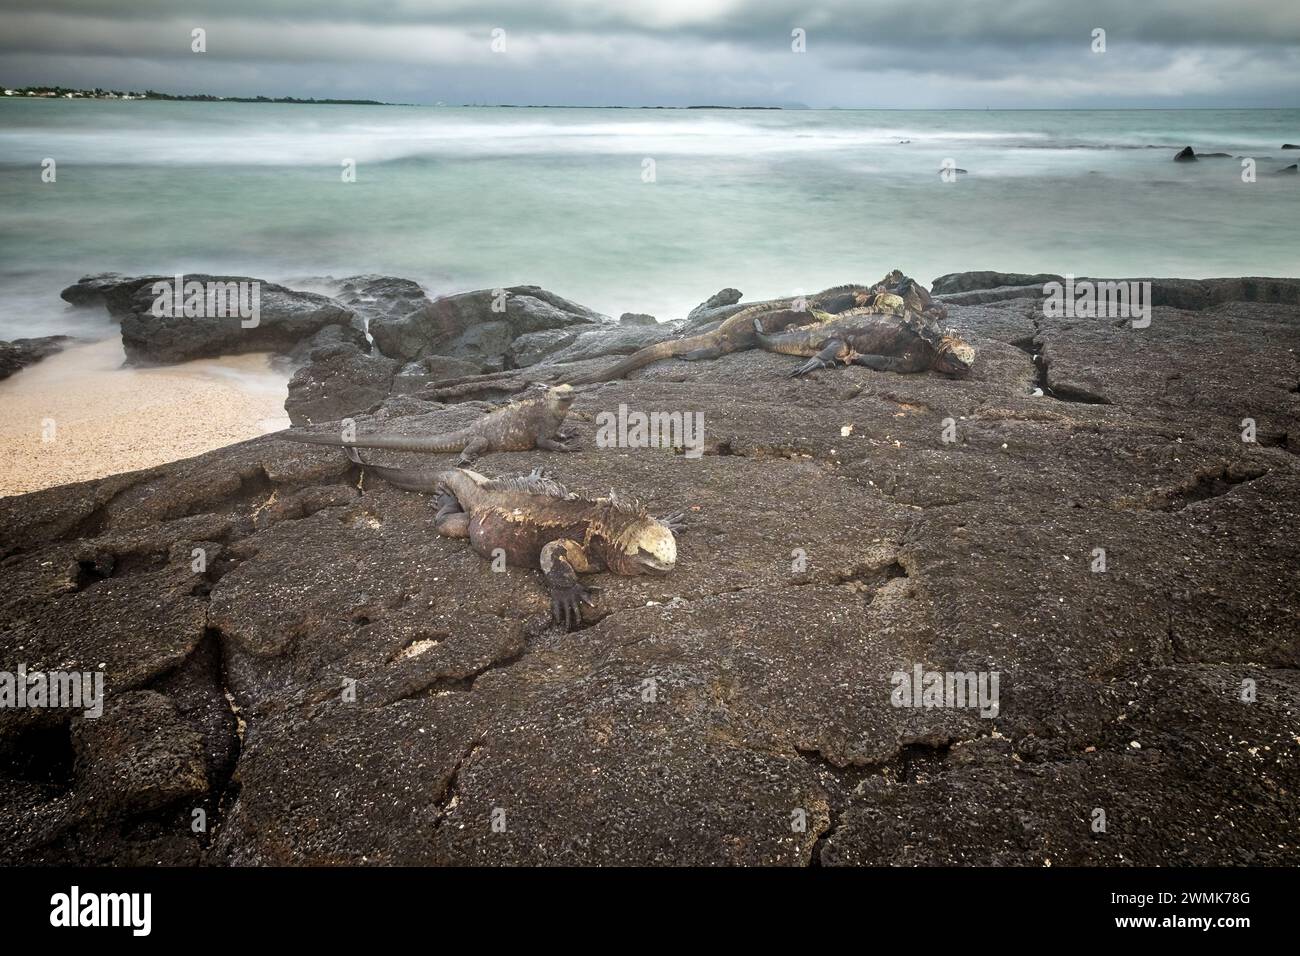 Lange Exposition mit einigen Leguanen, die auf den vulkanischen Felsen eines Strandes ruhen. Isabela Island, Galapagos. Stockfoto